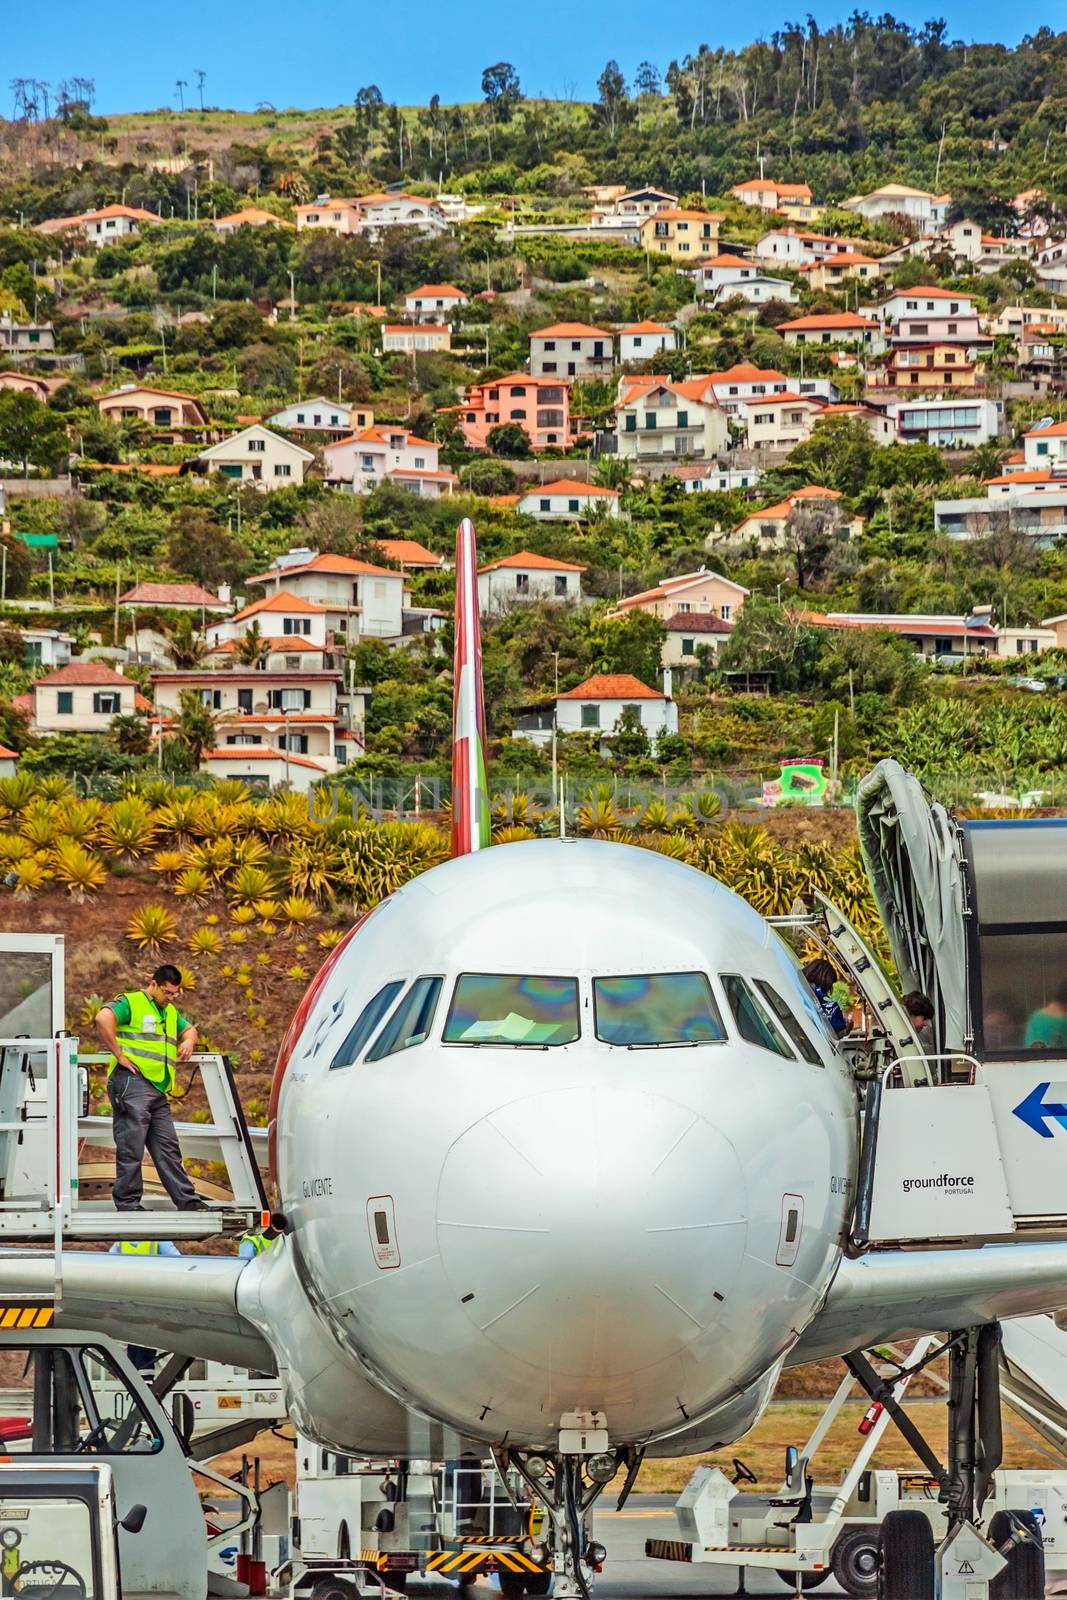 Airport Madeira - Airbus A320 by aldorado